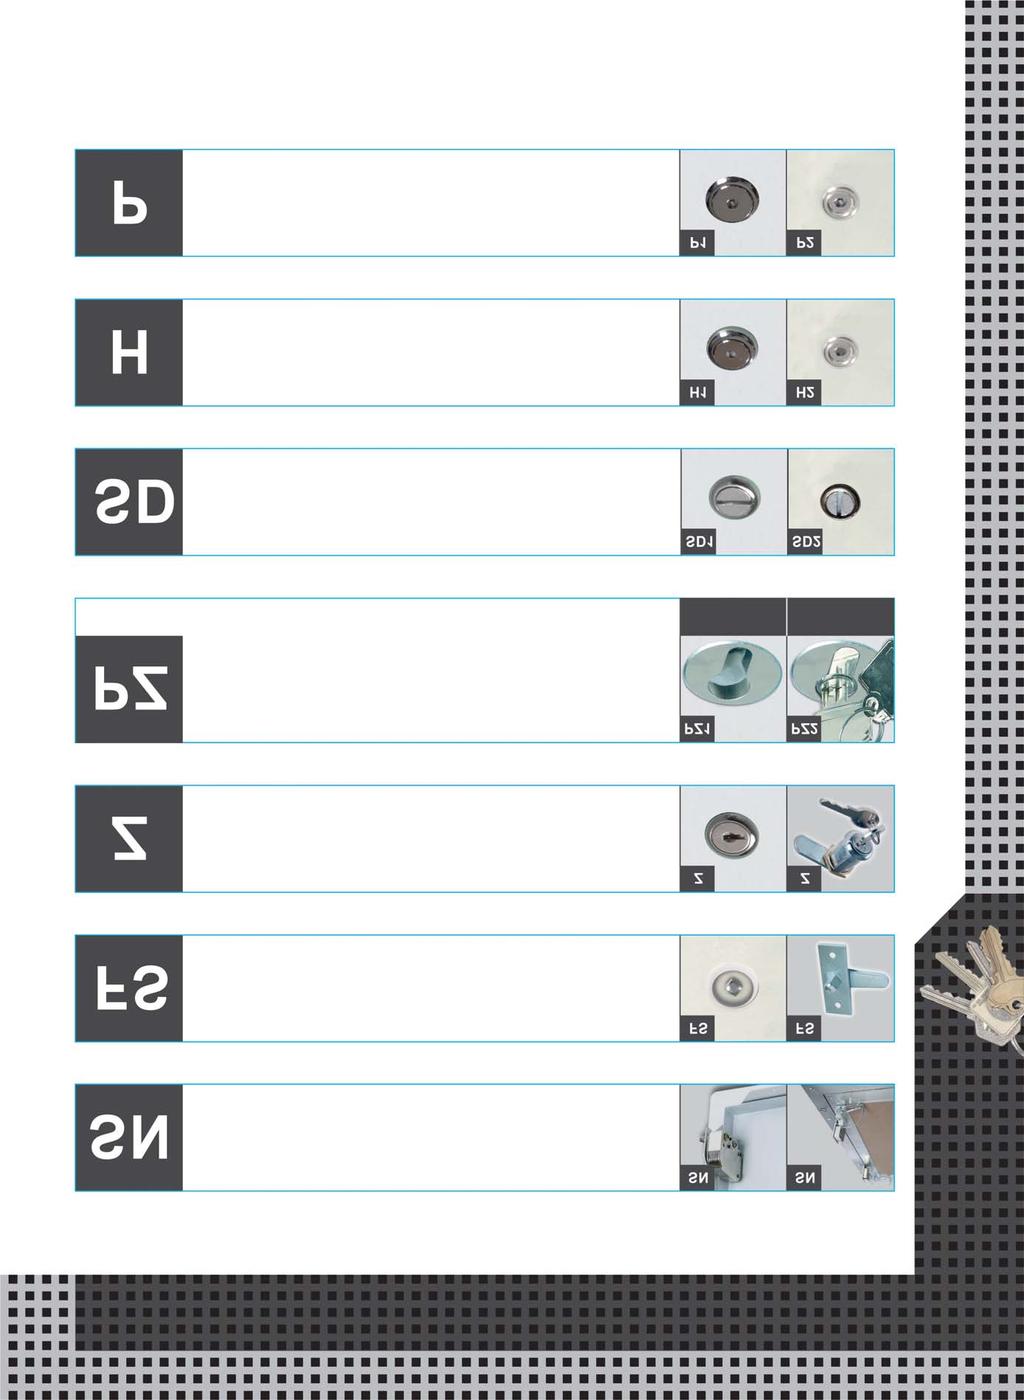 Schlösser Schlösser Schlösser Nachfolgend aufgeführte Schlösser können in unsere Revisionsklappen und Revisionstüren eingebaut werden: Schnappverschluss Vierkantschloss mit weißer Rosette